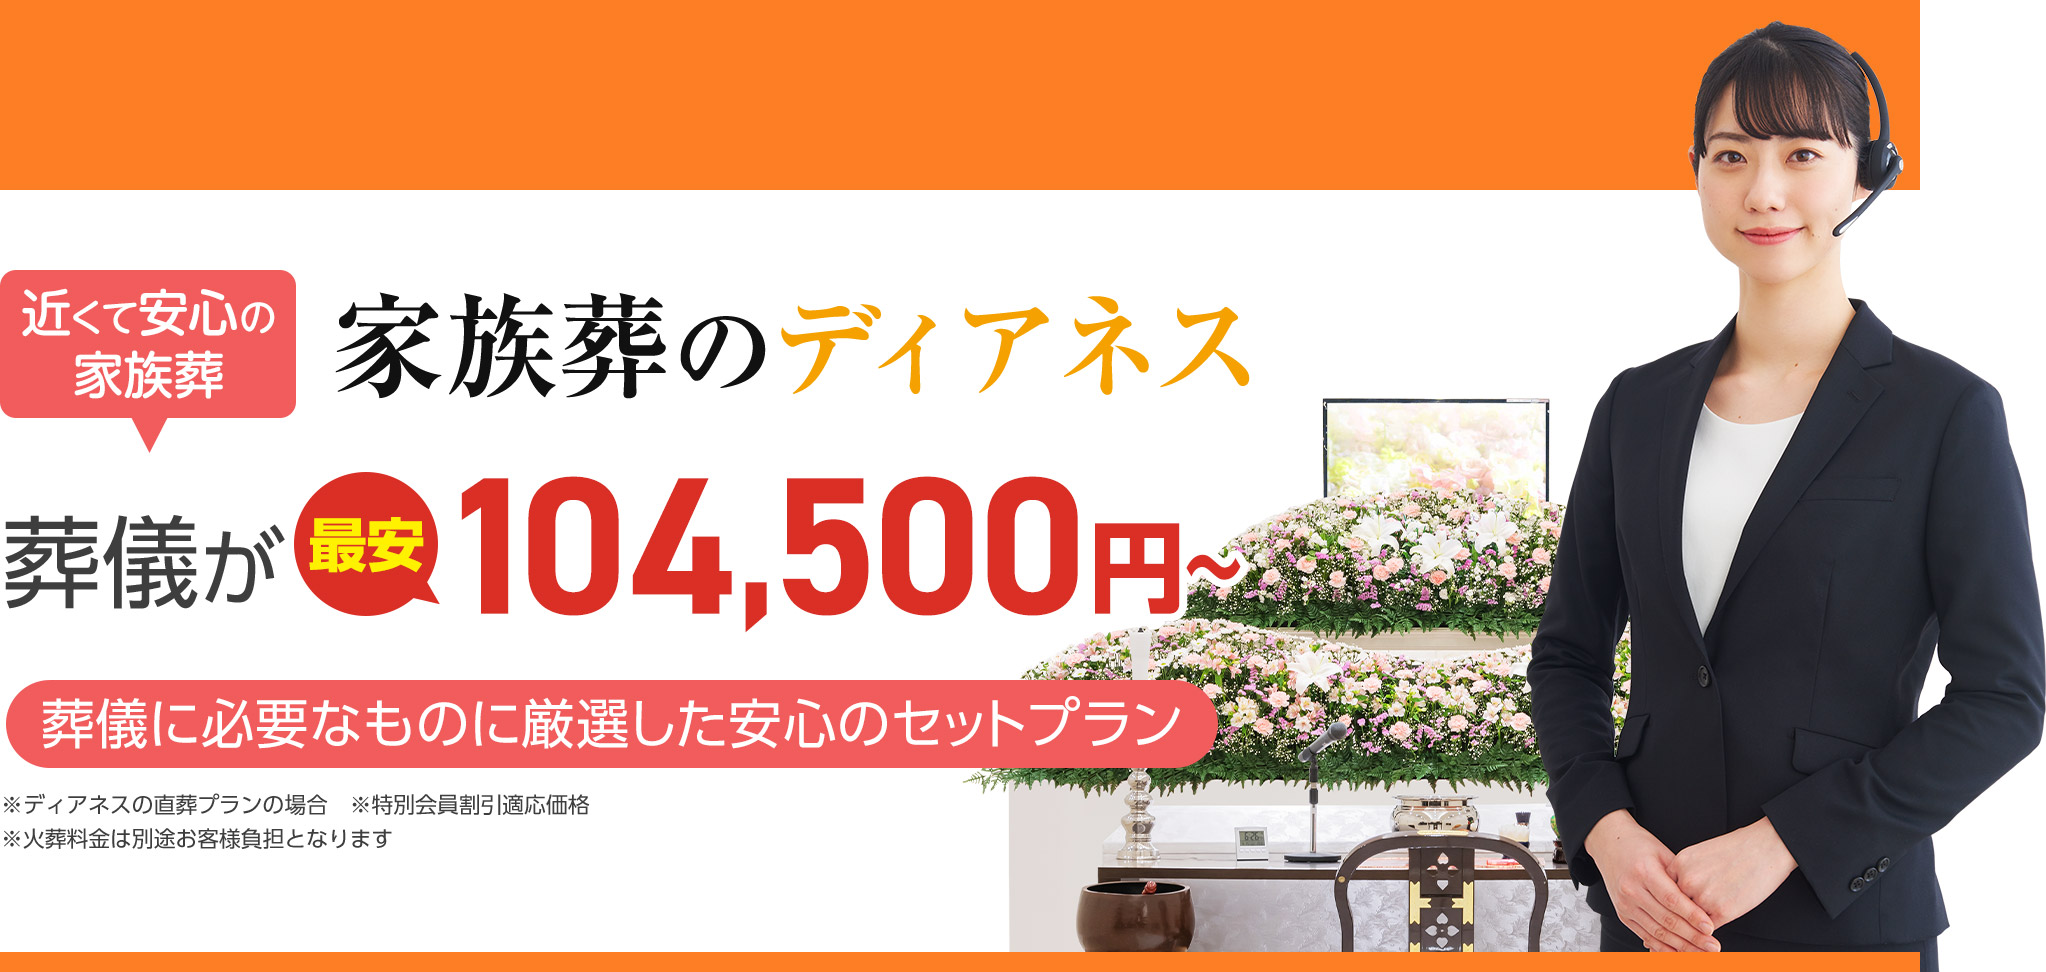 札幌市手稲区で葬儀・葬式をお探しなら家族葬のディアネス 近くて安心の葬儀・家族葬が最安税込104,500円